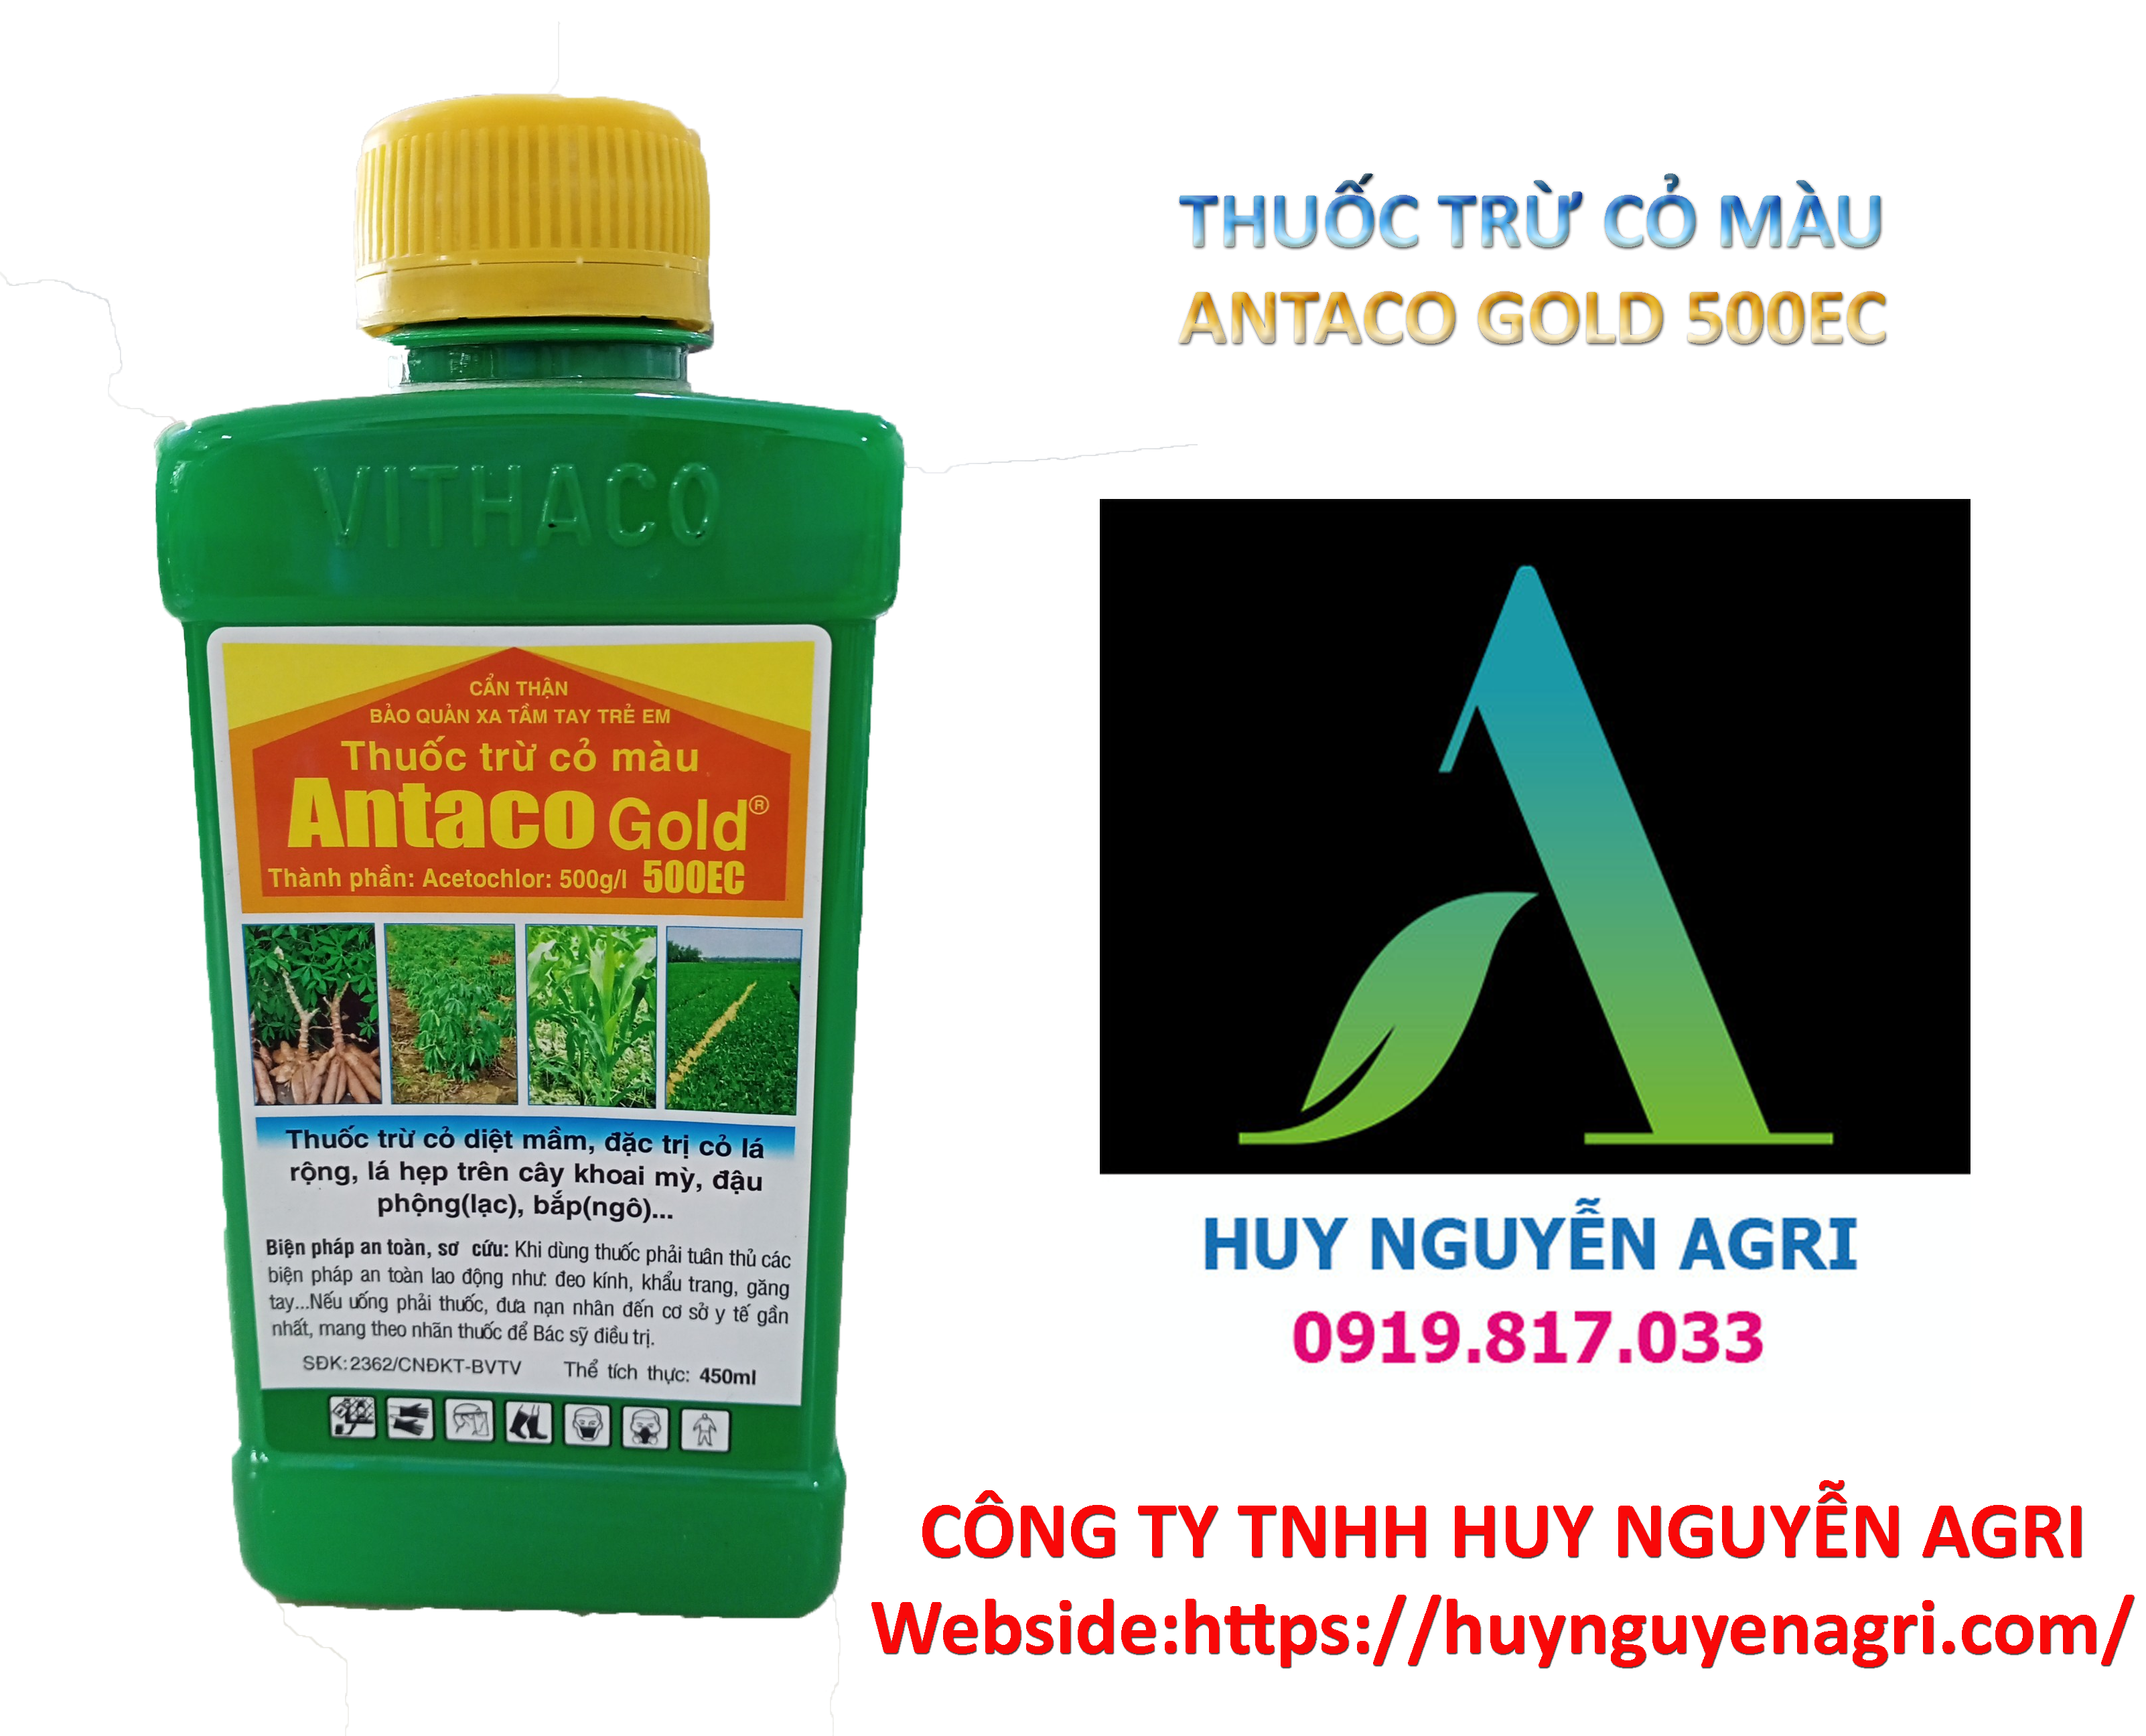 ANTACO GOLD 500EC